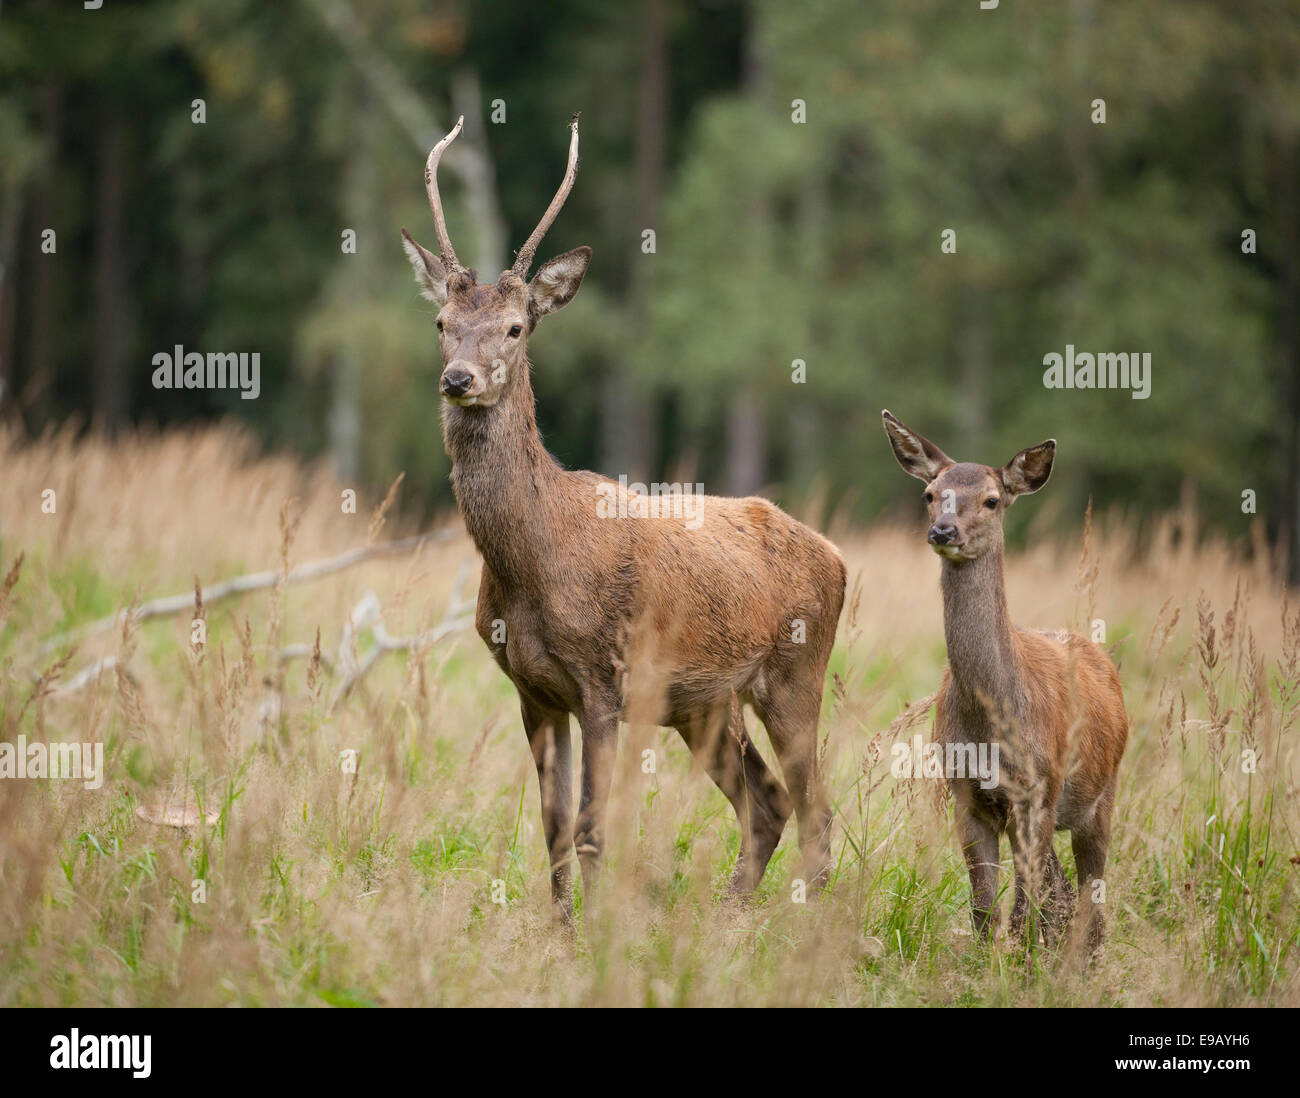 Red Deer (Cervus elaphus), le cerf et les jeunes veaux, captive, Saxe, Allemagne Banque D'Images